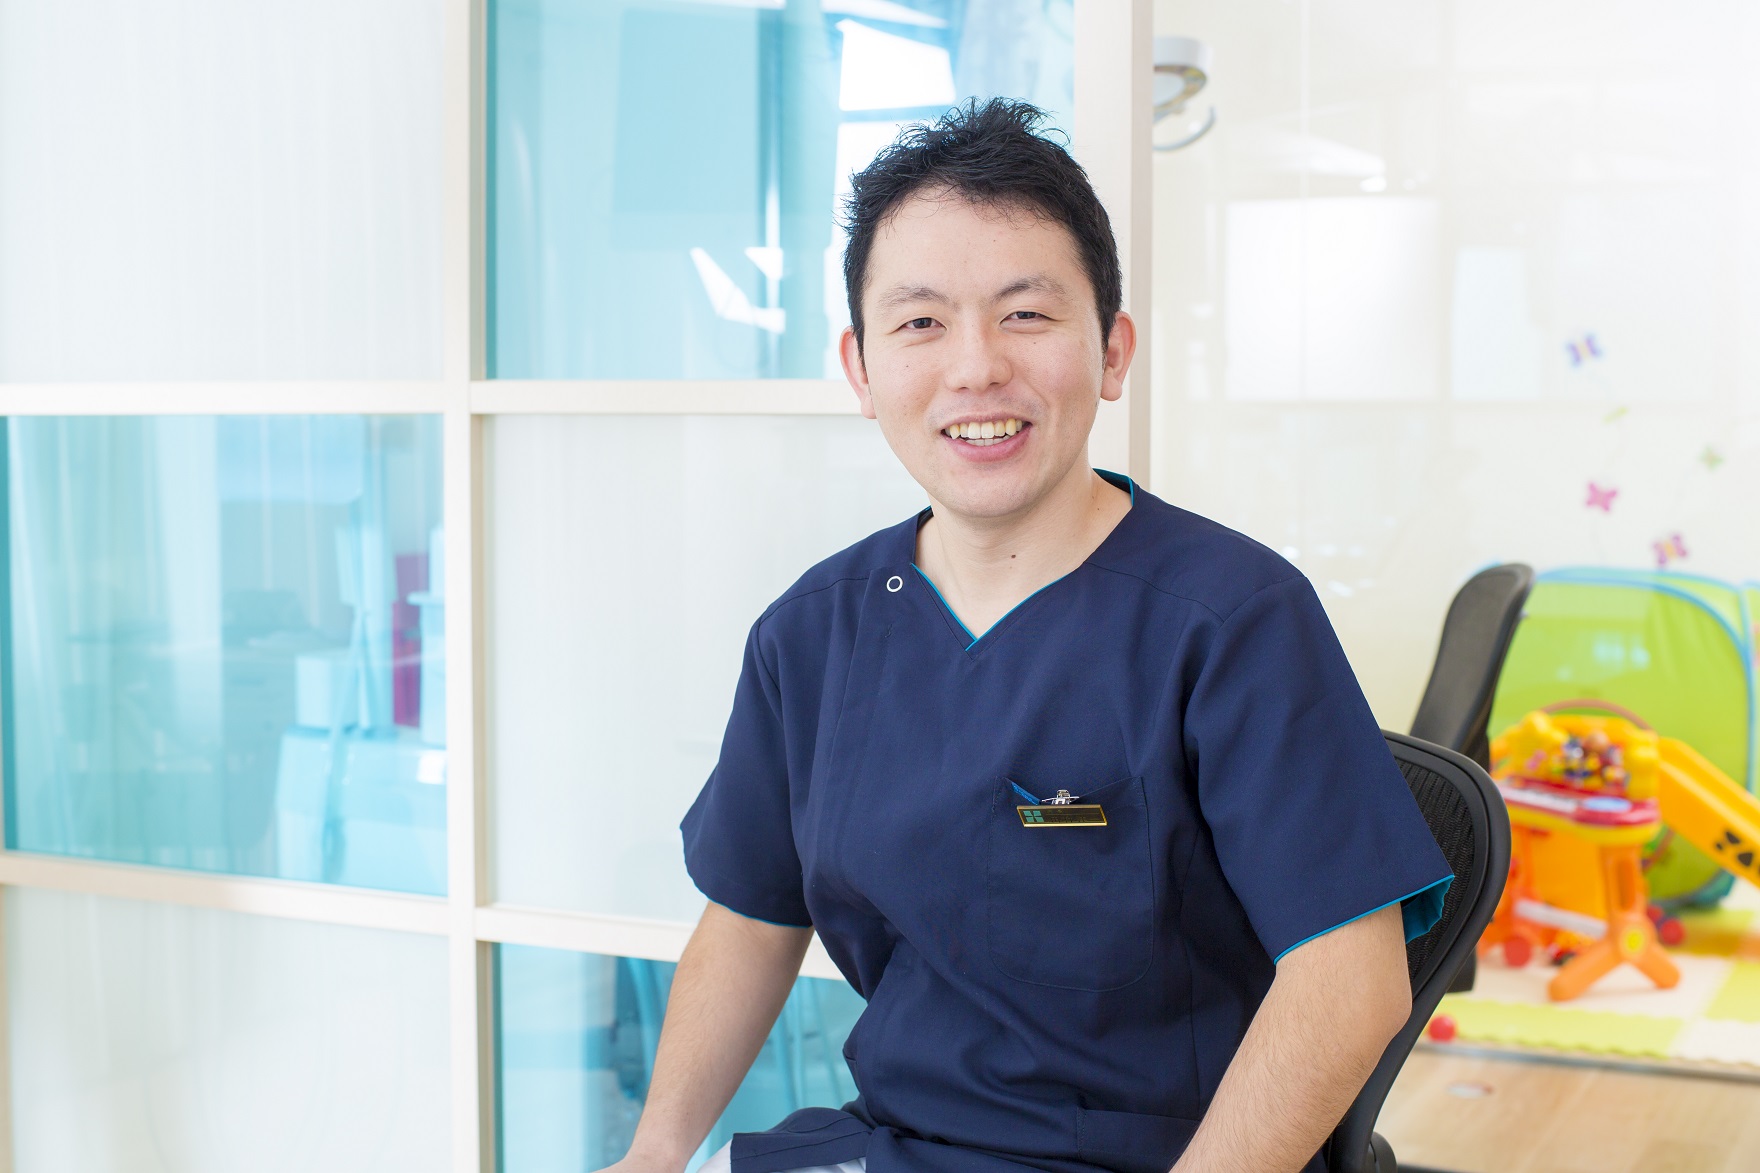 新規開院直後にターゲットと医院名を変更！歯科競合の多い大阪市で売上3倍を達成